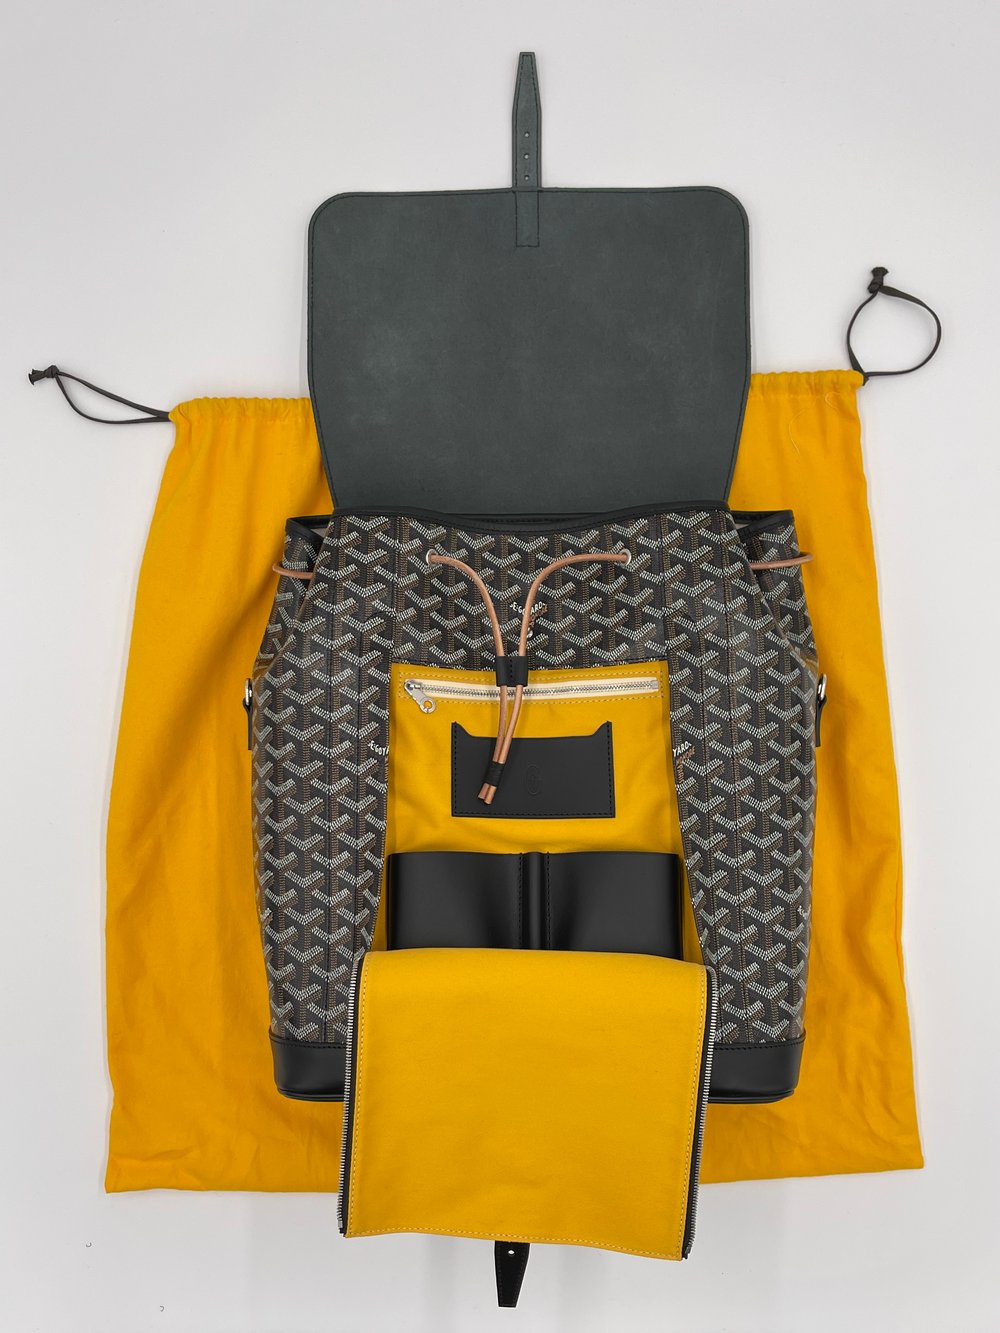 Goyard Alpine Backpack in black – LuxuryPromise